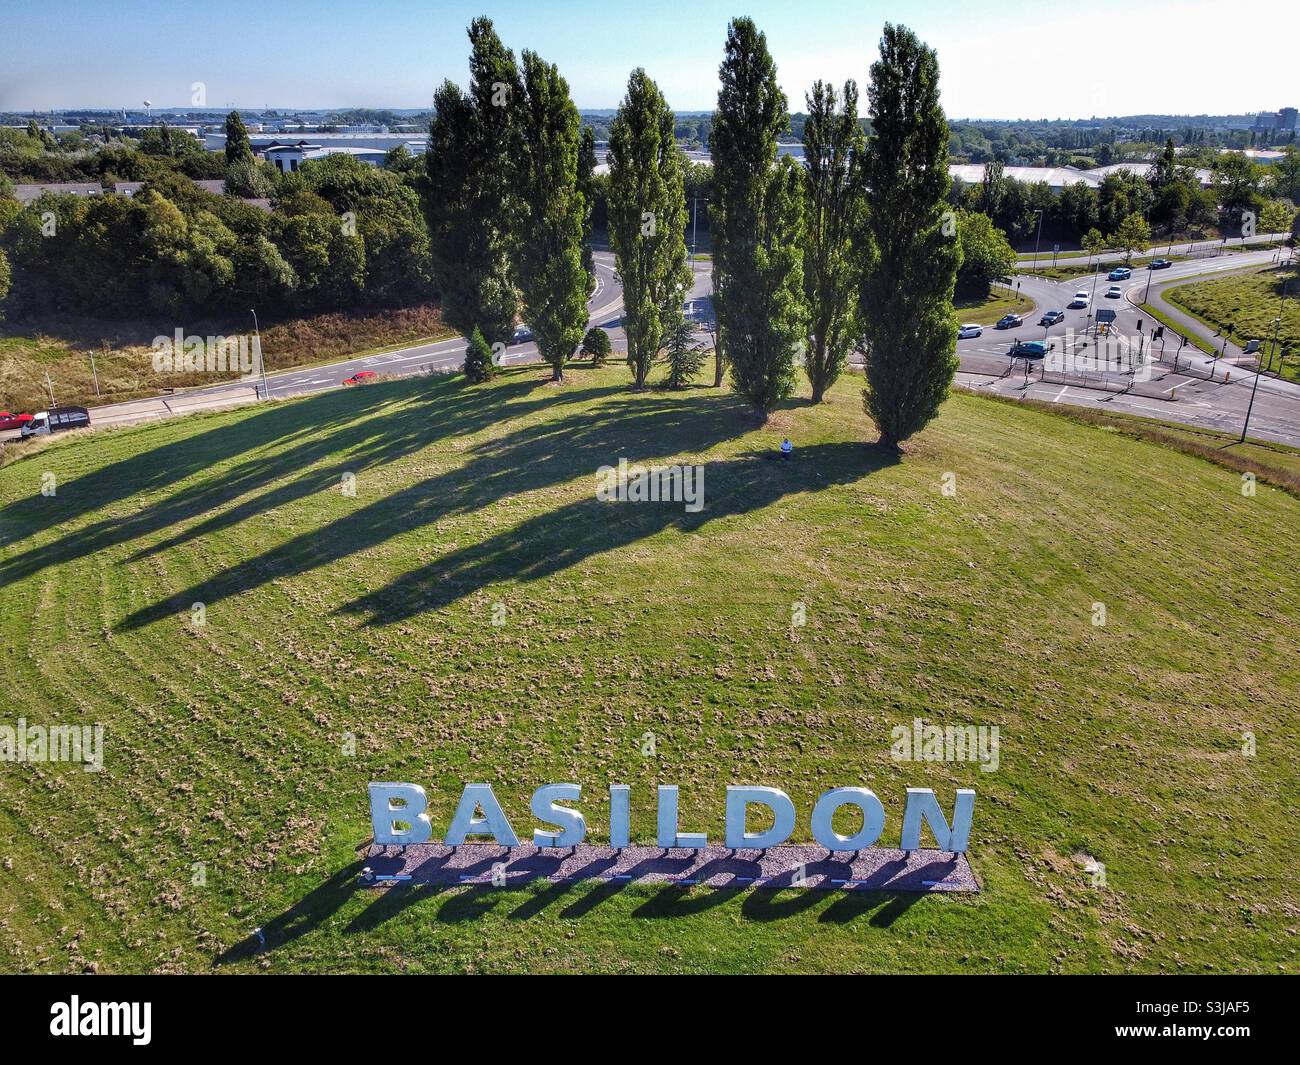 Basildon Banque D'Images